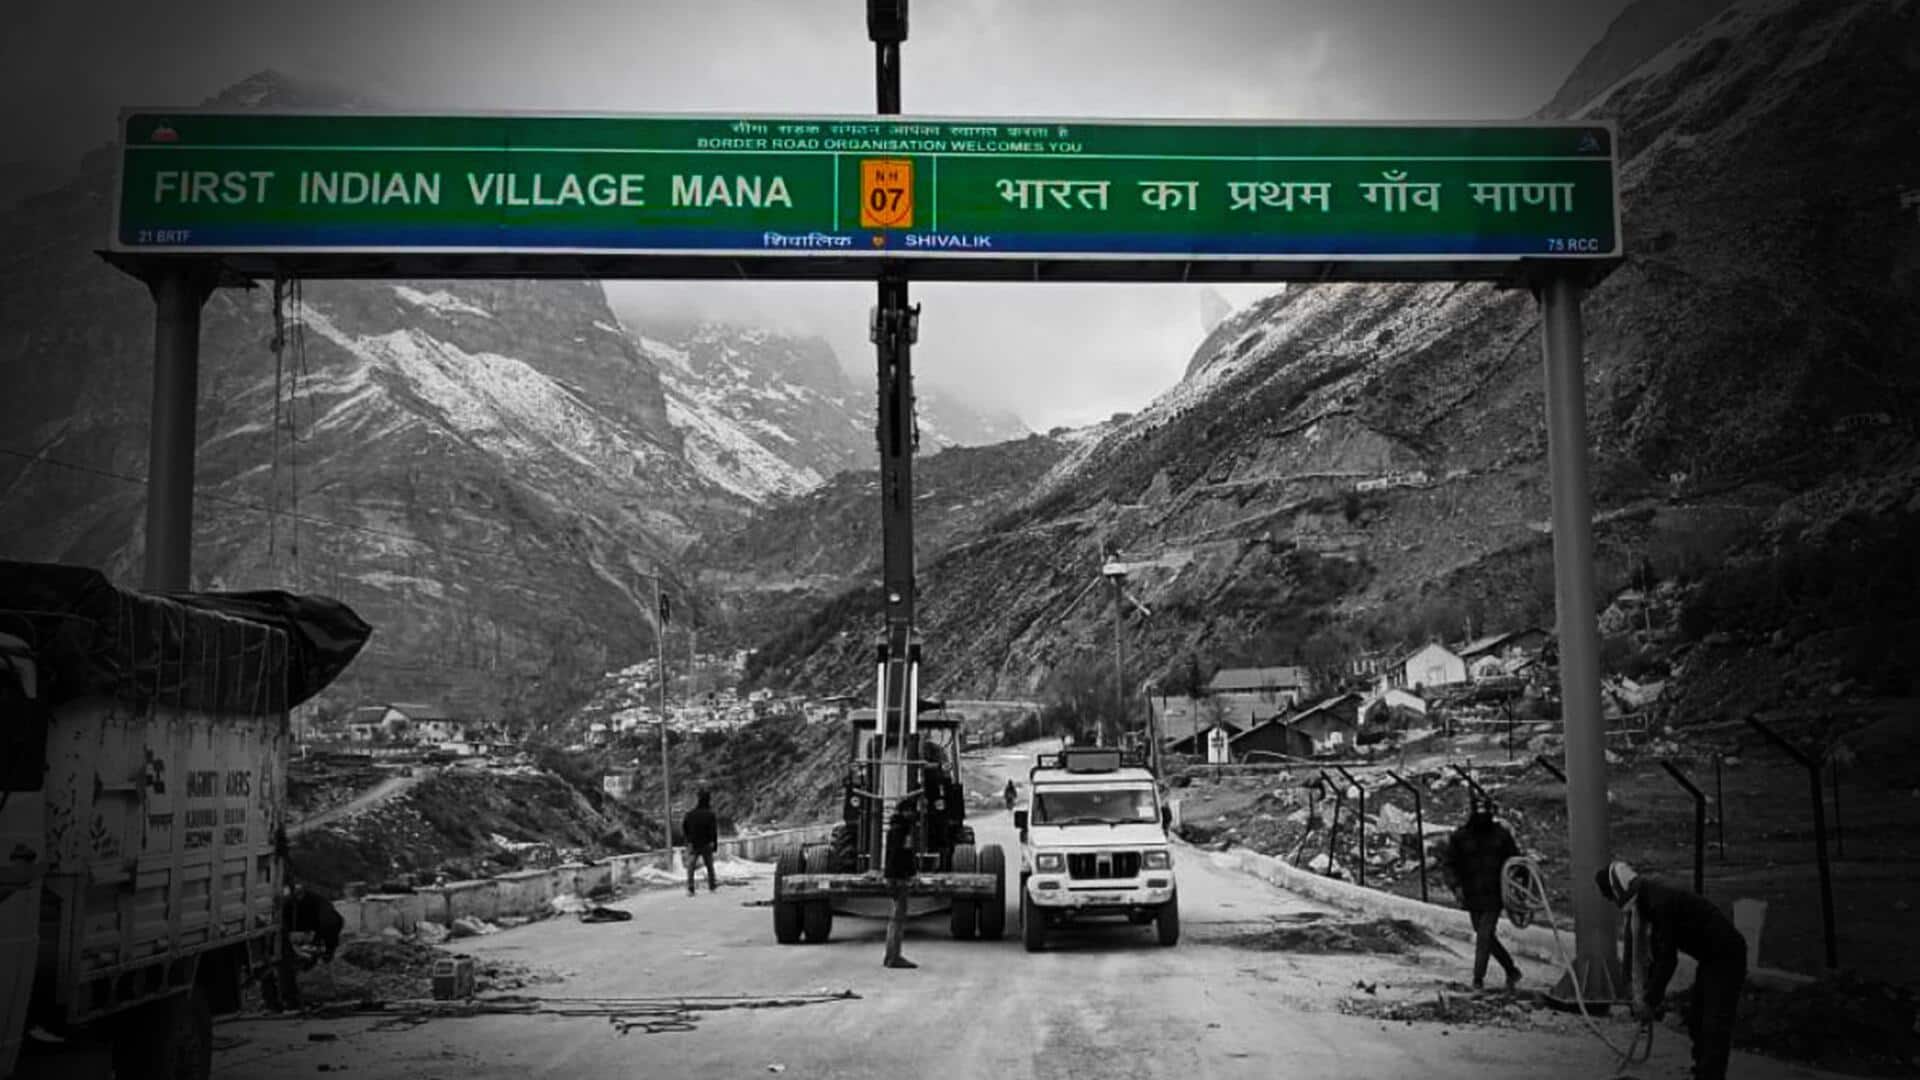 उत्तराखंड में खूबसूरत वादियों से घिरा है भारत का पहला गांव 'माणा', जानिए रोचक तथ्य